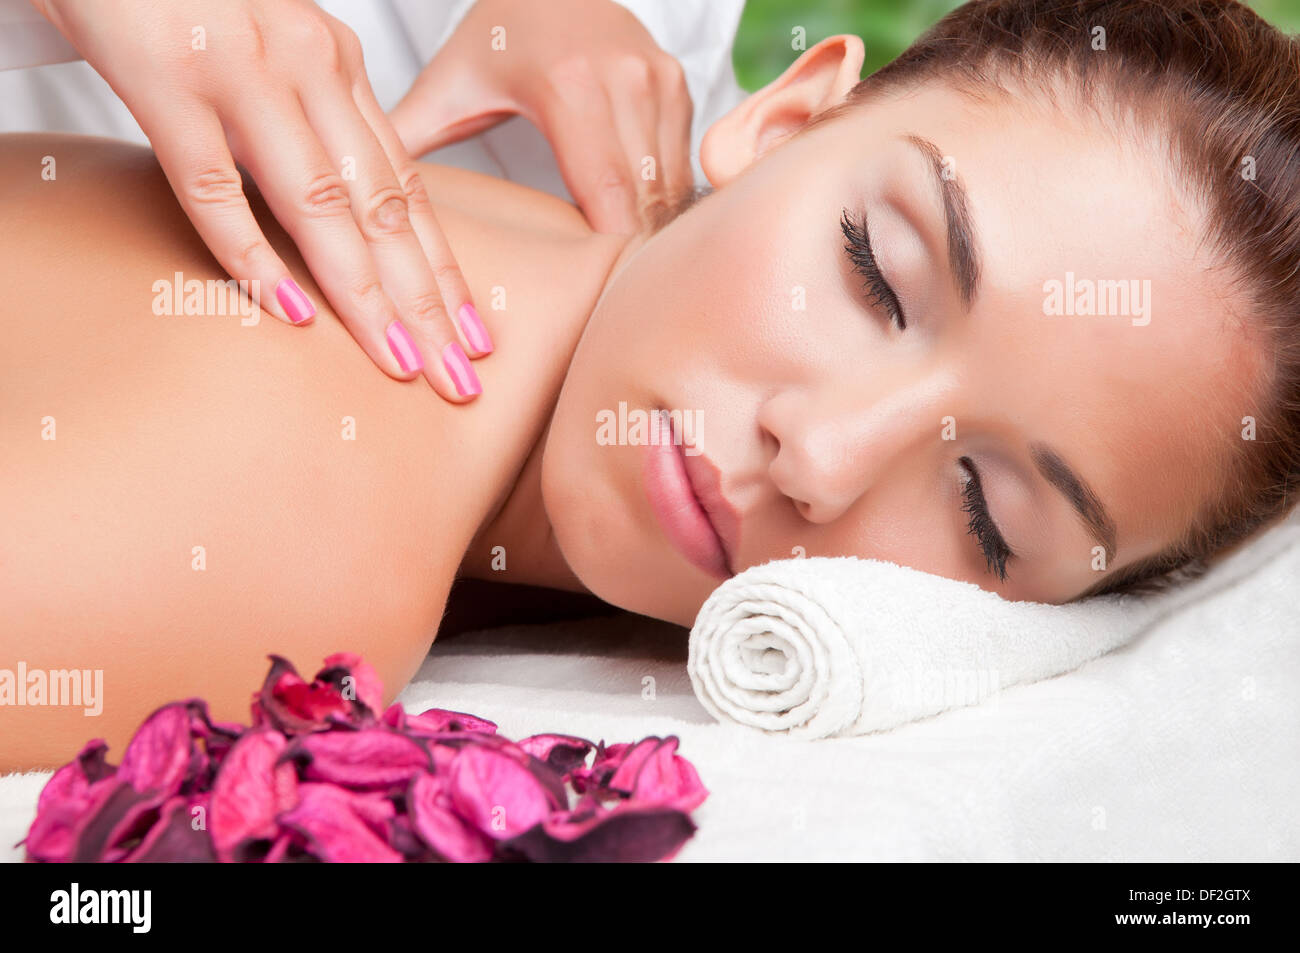 Junge Frau liegend in einem Spa bereit, eine Massage zu bekommen Stockfoto